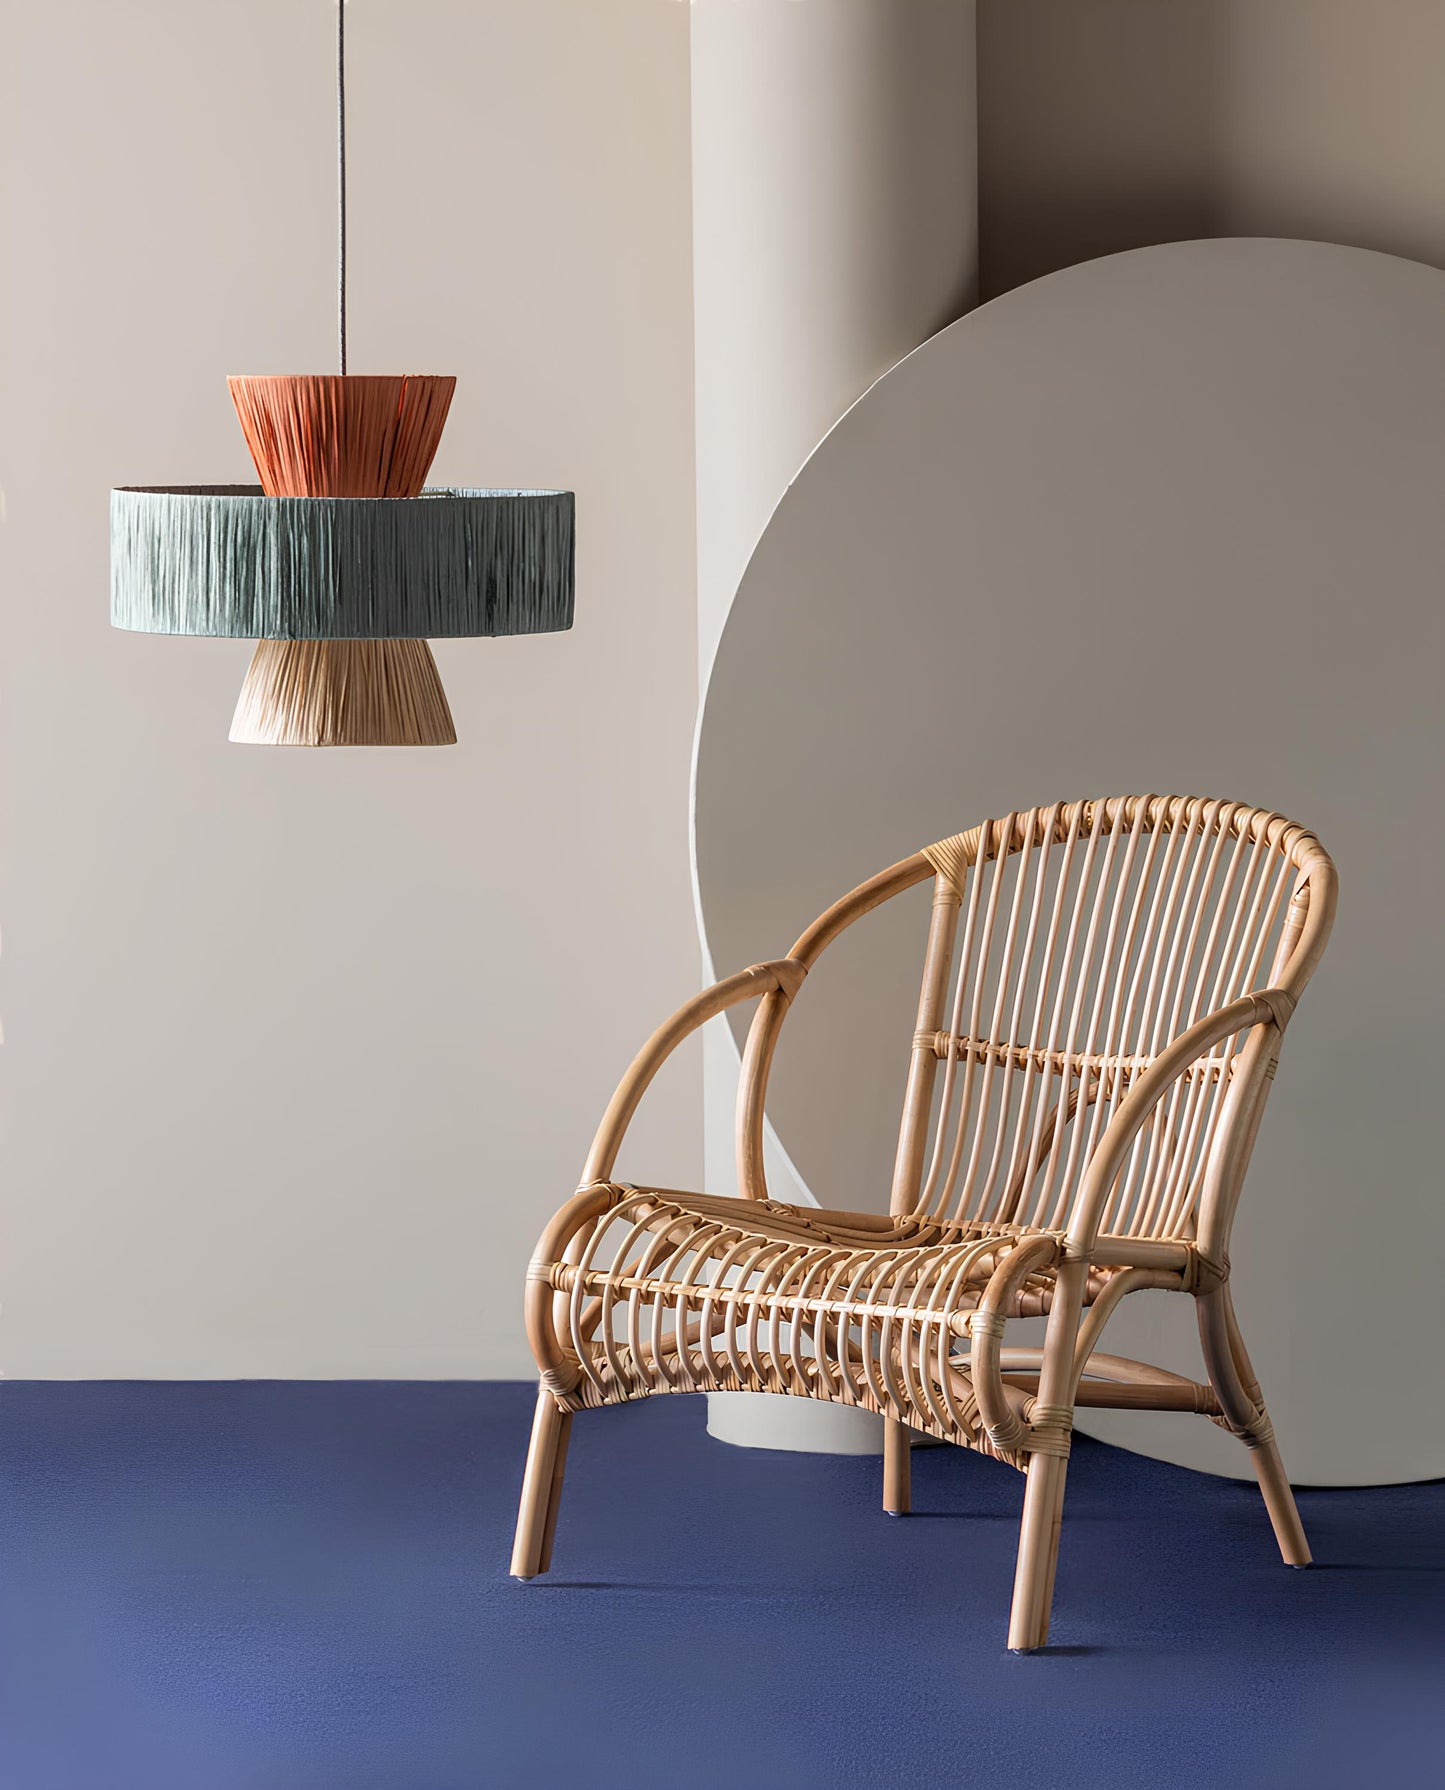 Bamboo Hanging lamp for Living Room | Rattan Pendant light | Cane ceiling light - Samaira - Akway